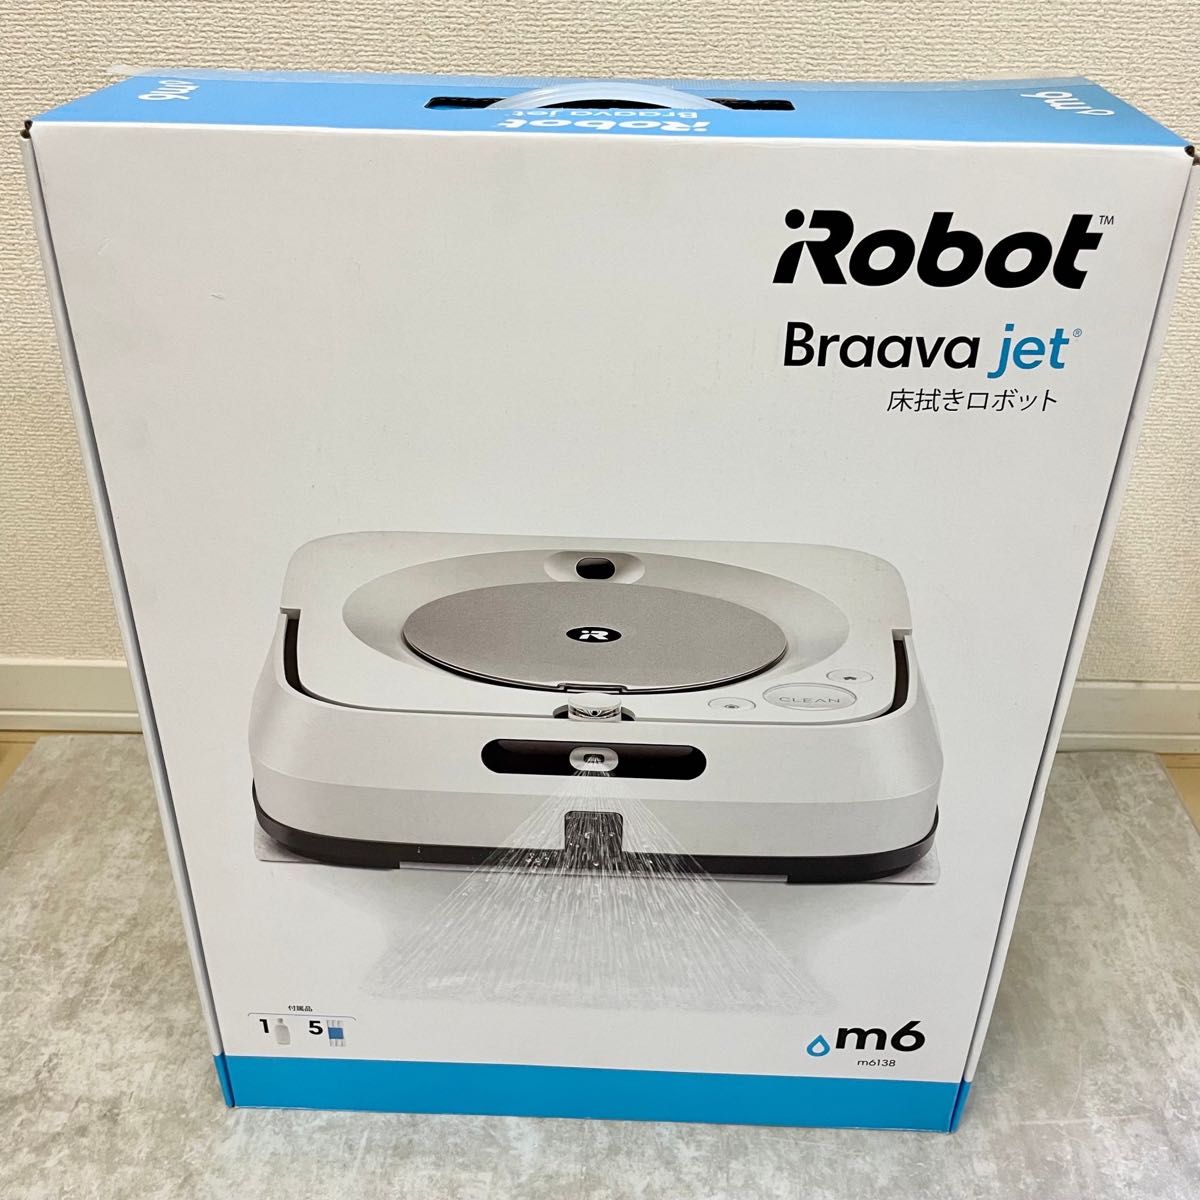 新品未使用品 iRobot アイロボット ブラーバジェット m6 ロボット掃除機